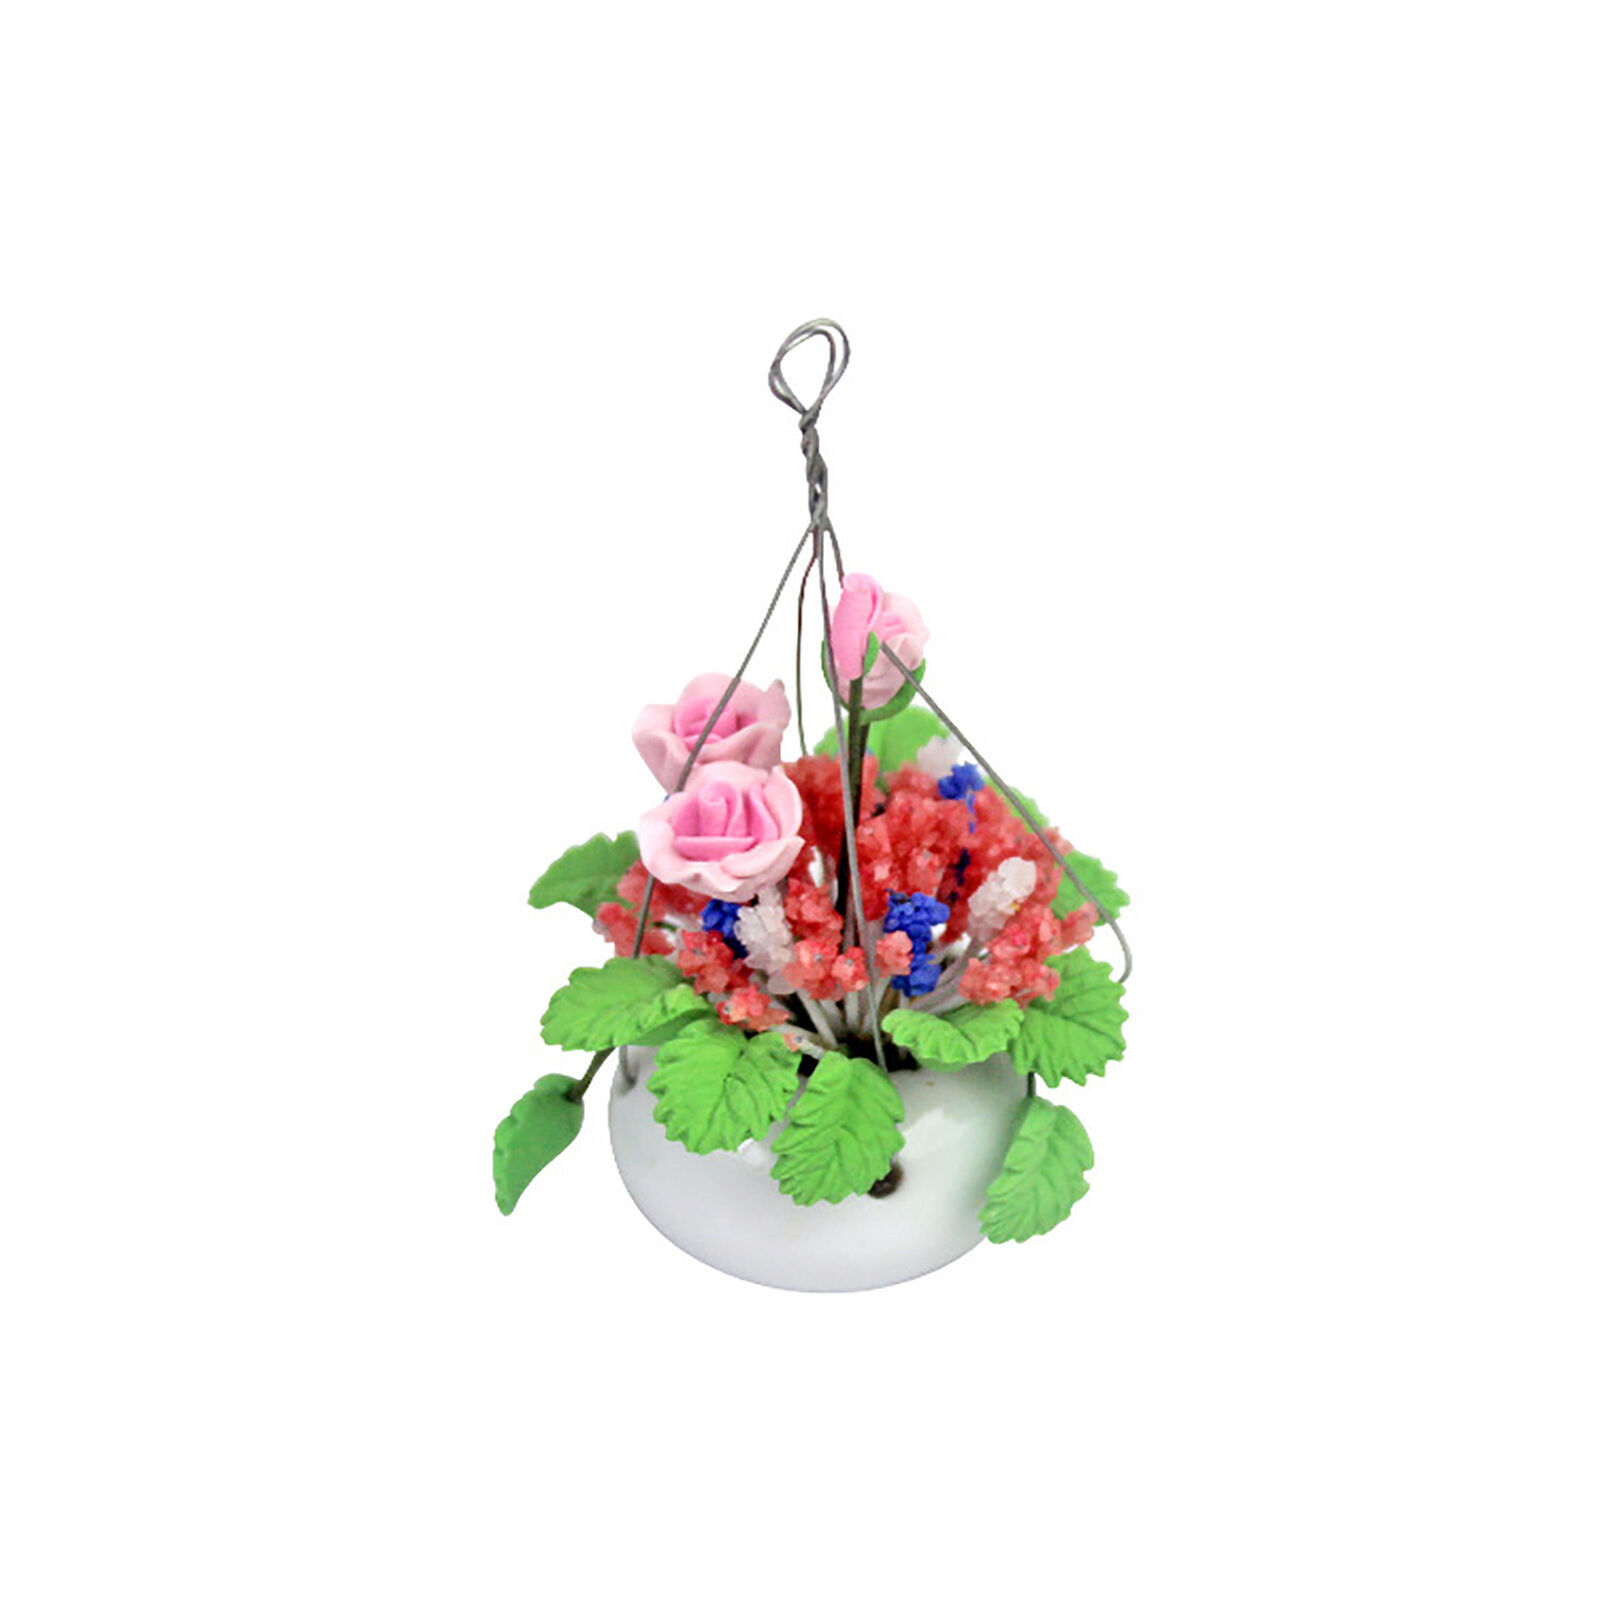 Dollhouse Miniature 1 /12 Scale Hanging Plants Bonsai Flower Pots Accessories